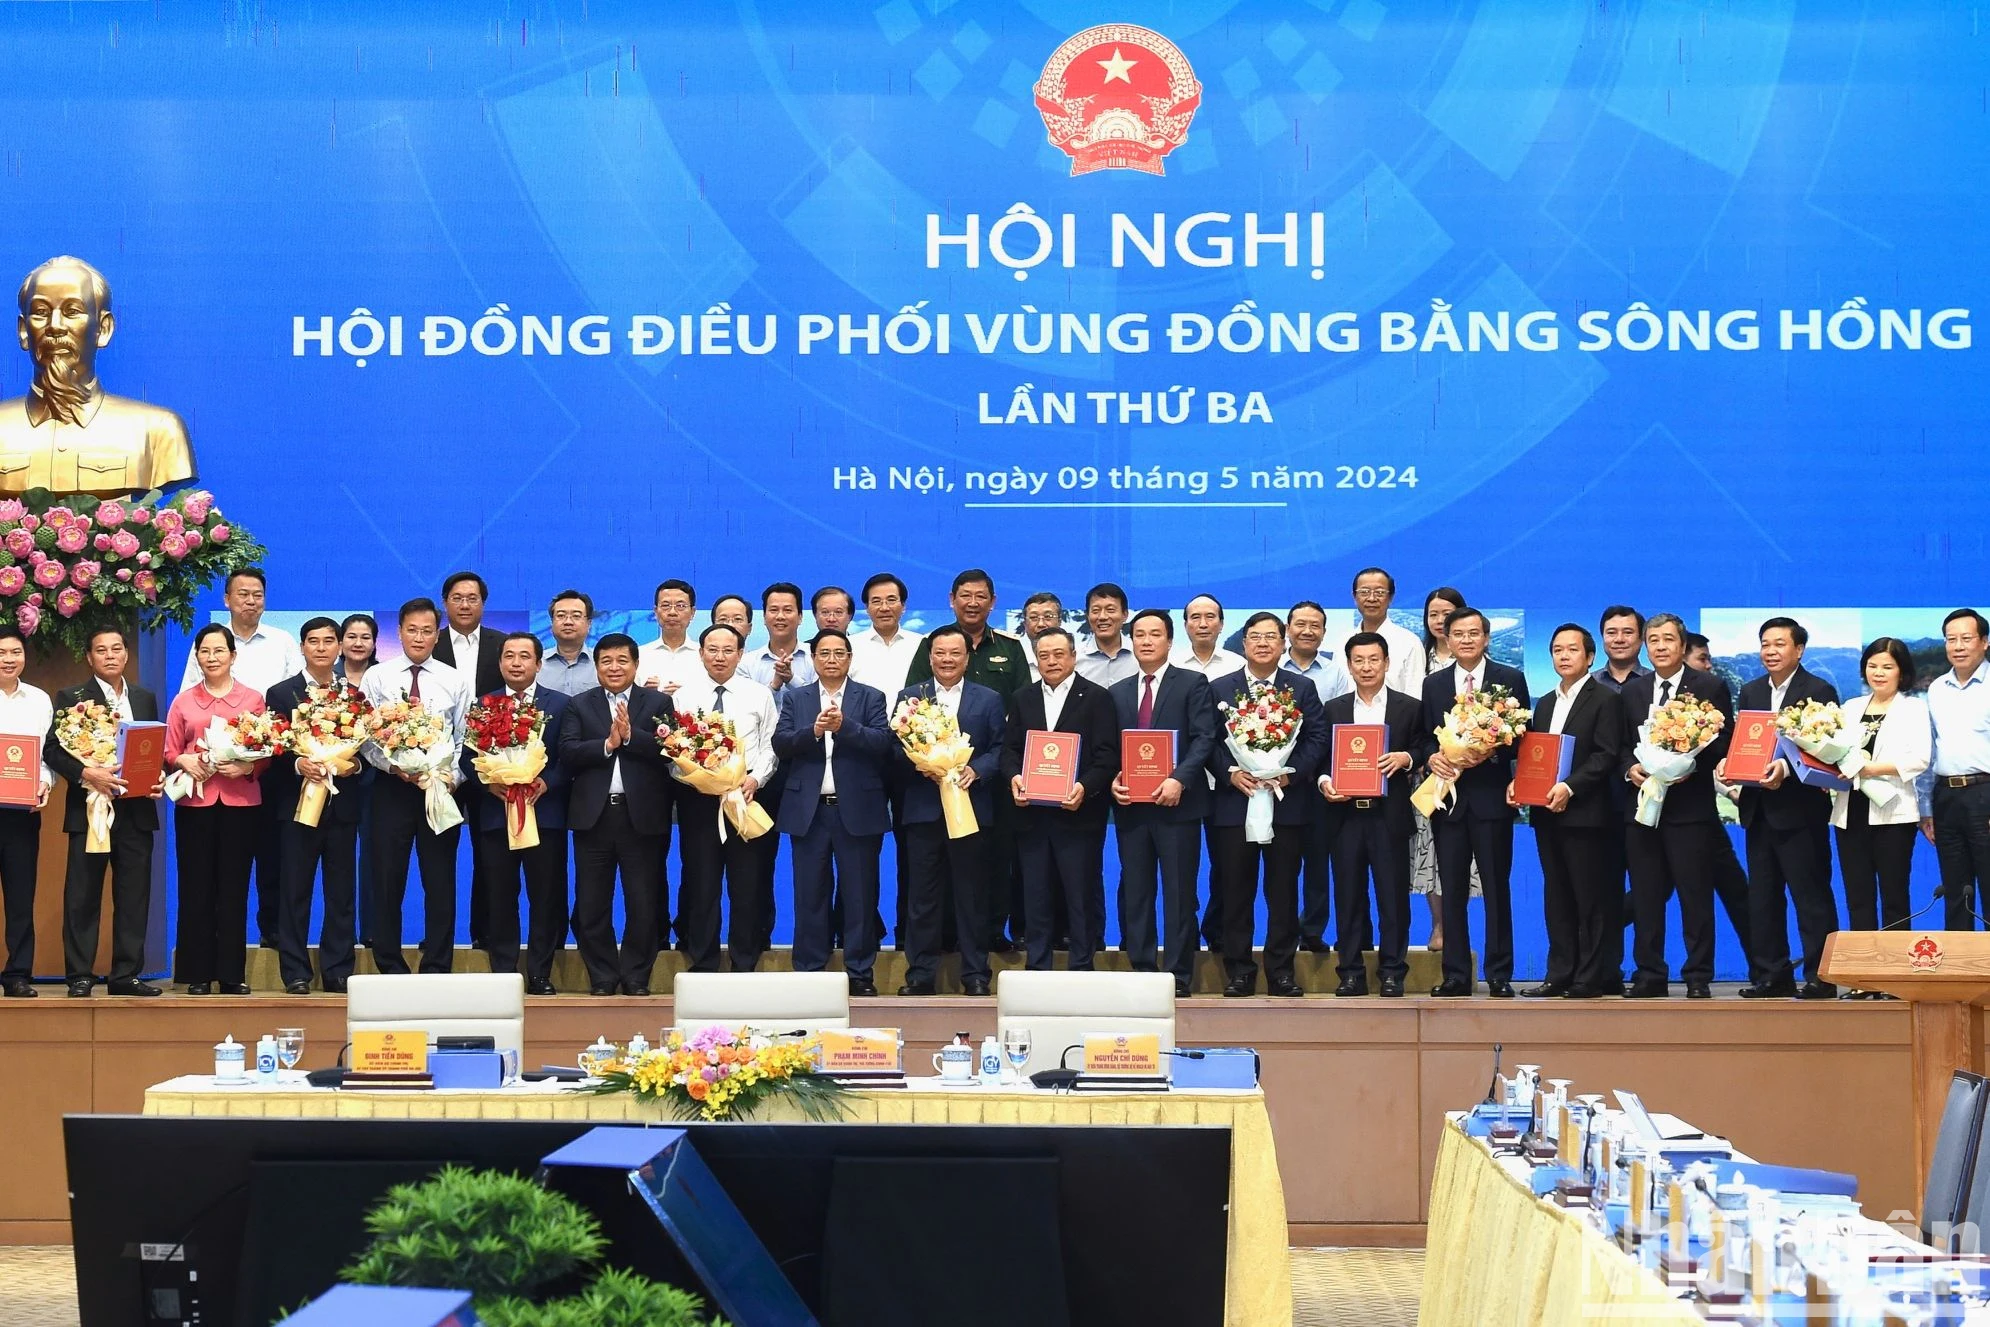 [Ảnh] Thủ tướng Phạm Minh Chính chủ trì Hội nghị lần thứ 3 Hội đồng điều phối vùng Đồng bằng sông Hồng ảnh 7